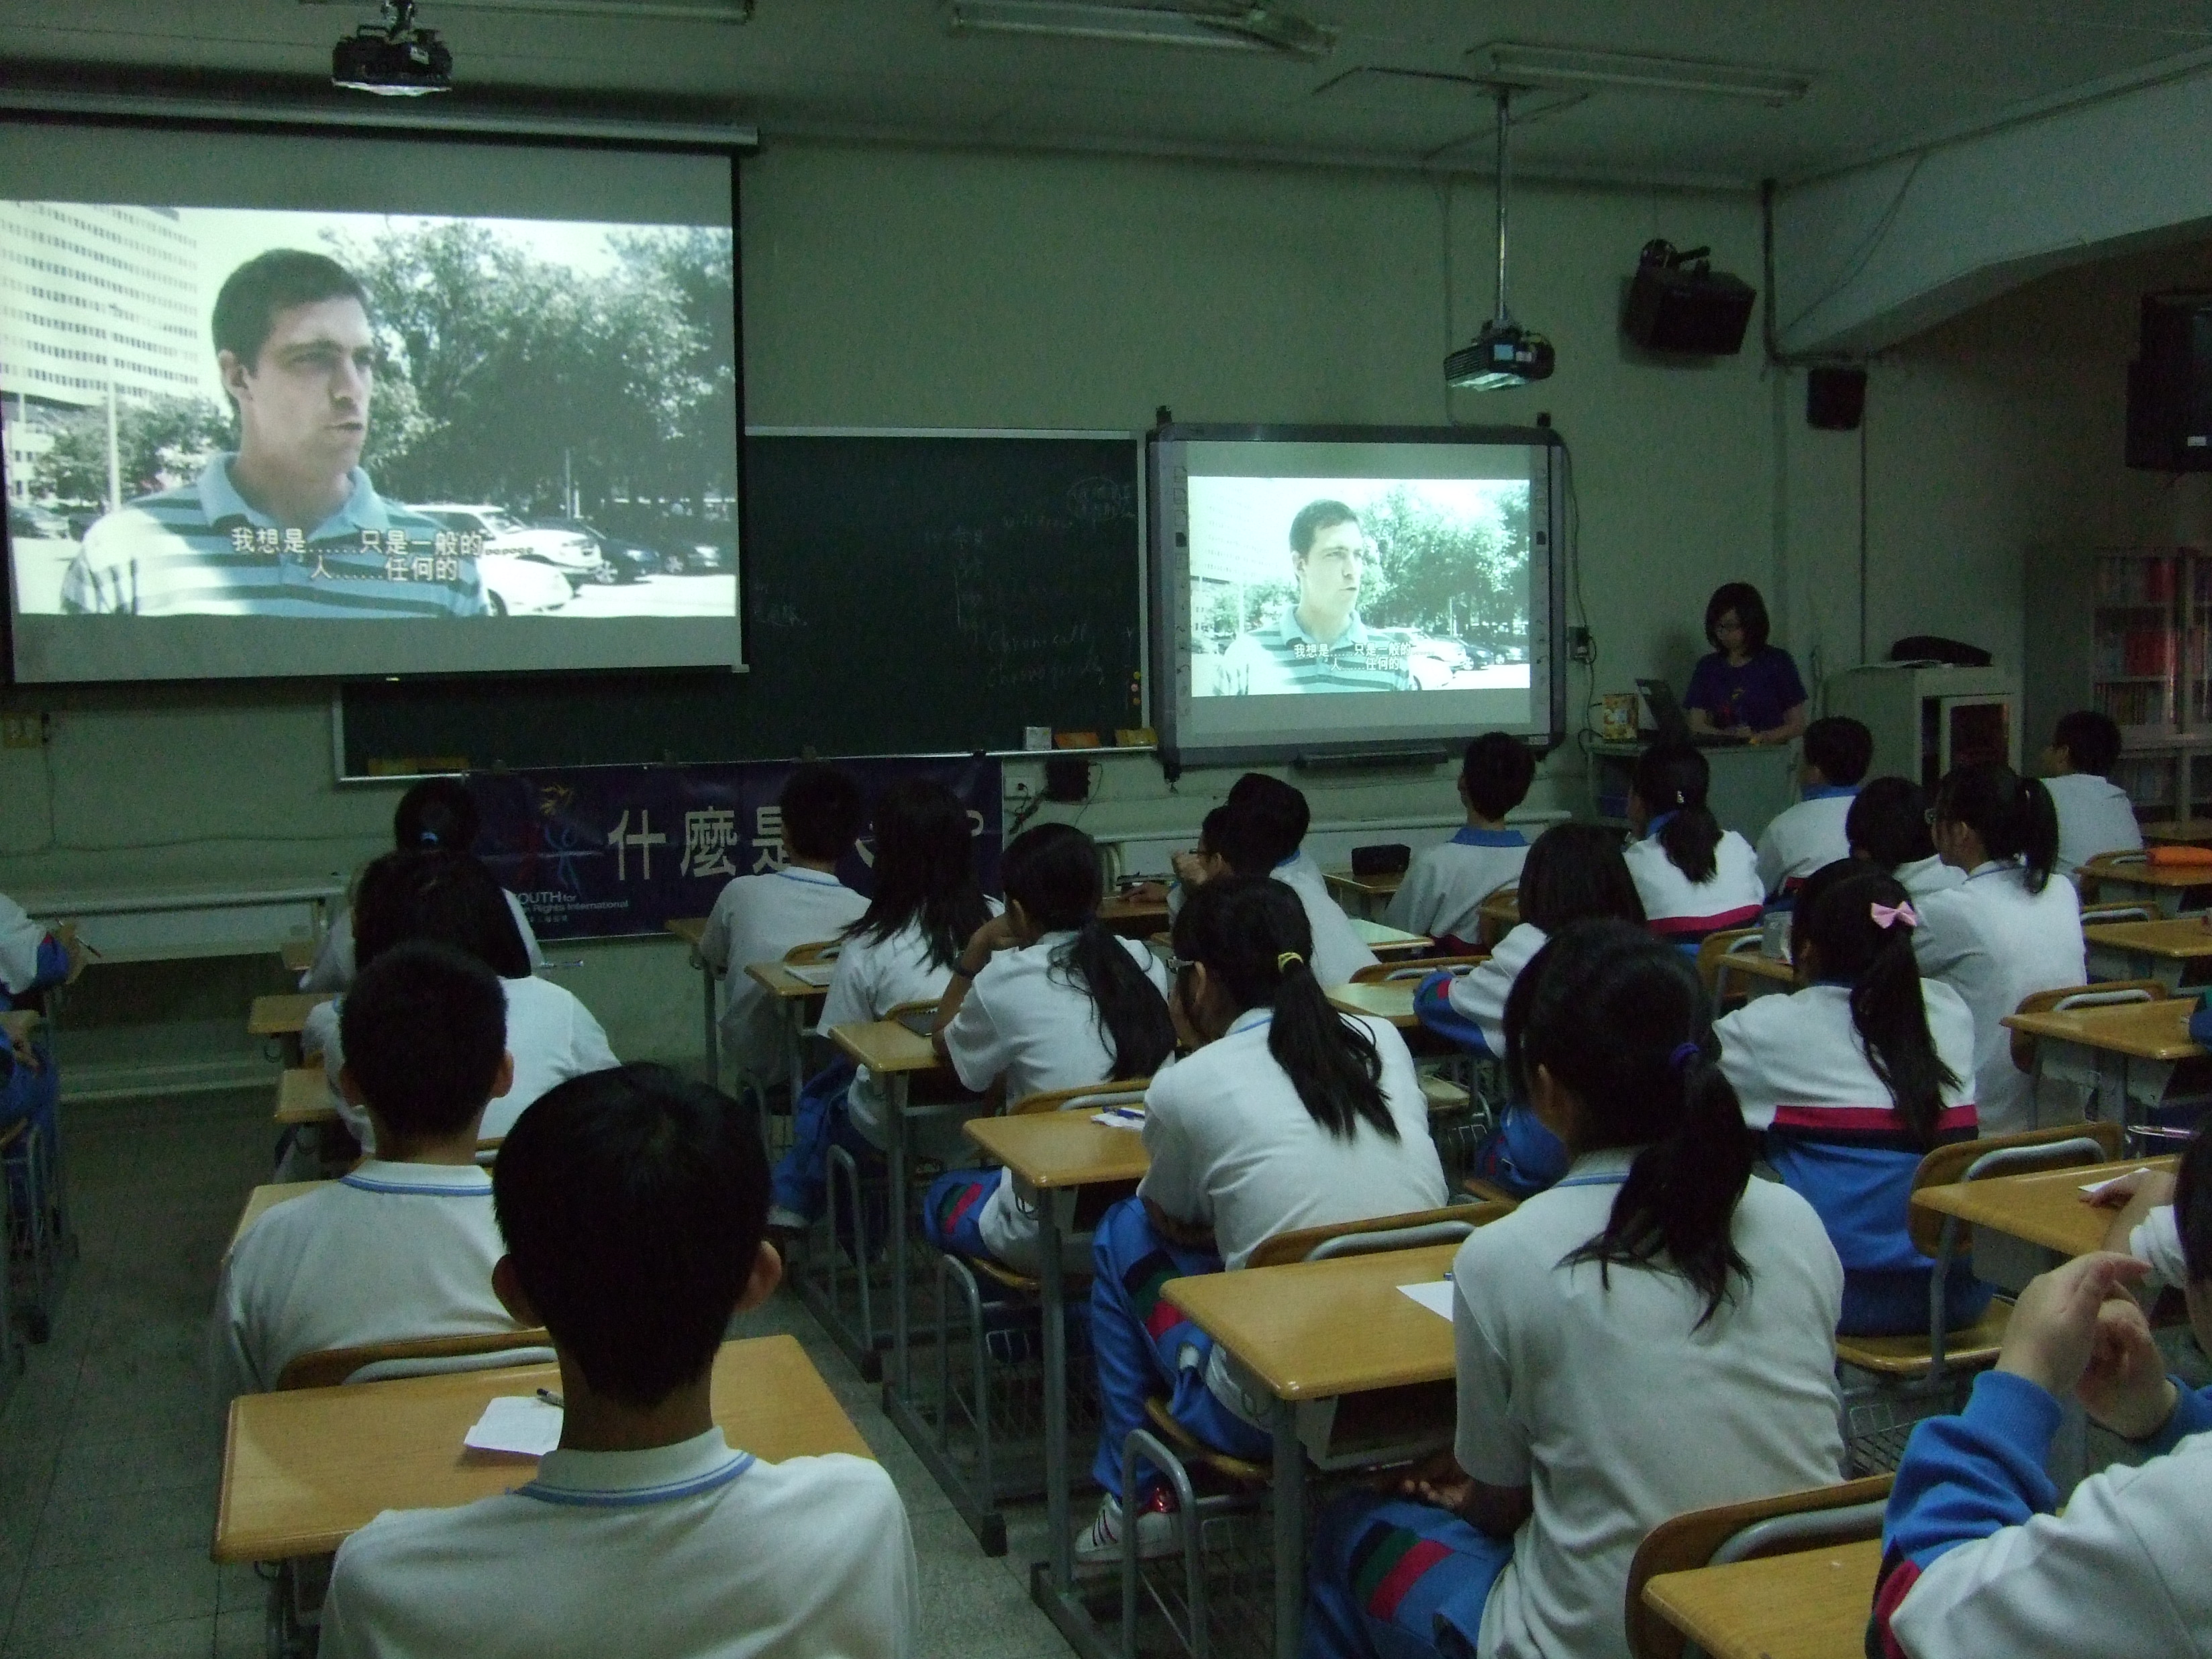 山達基「人權」影片教學 青少年快樂學習